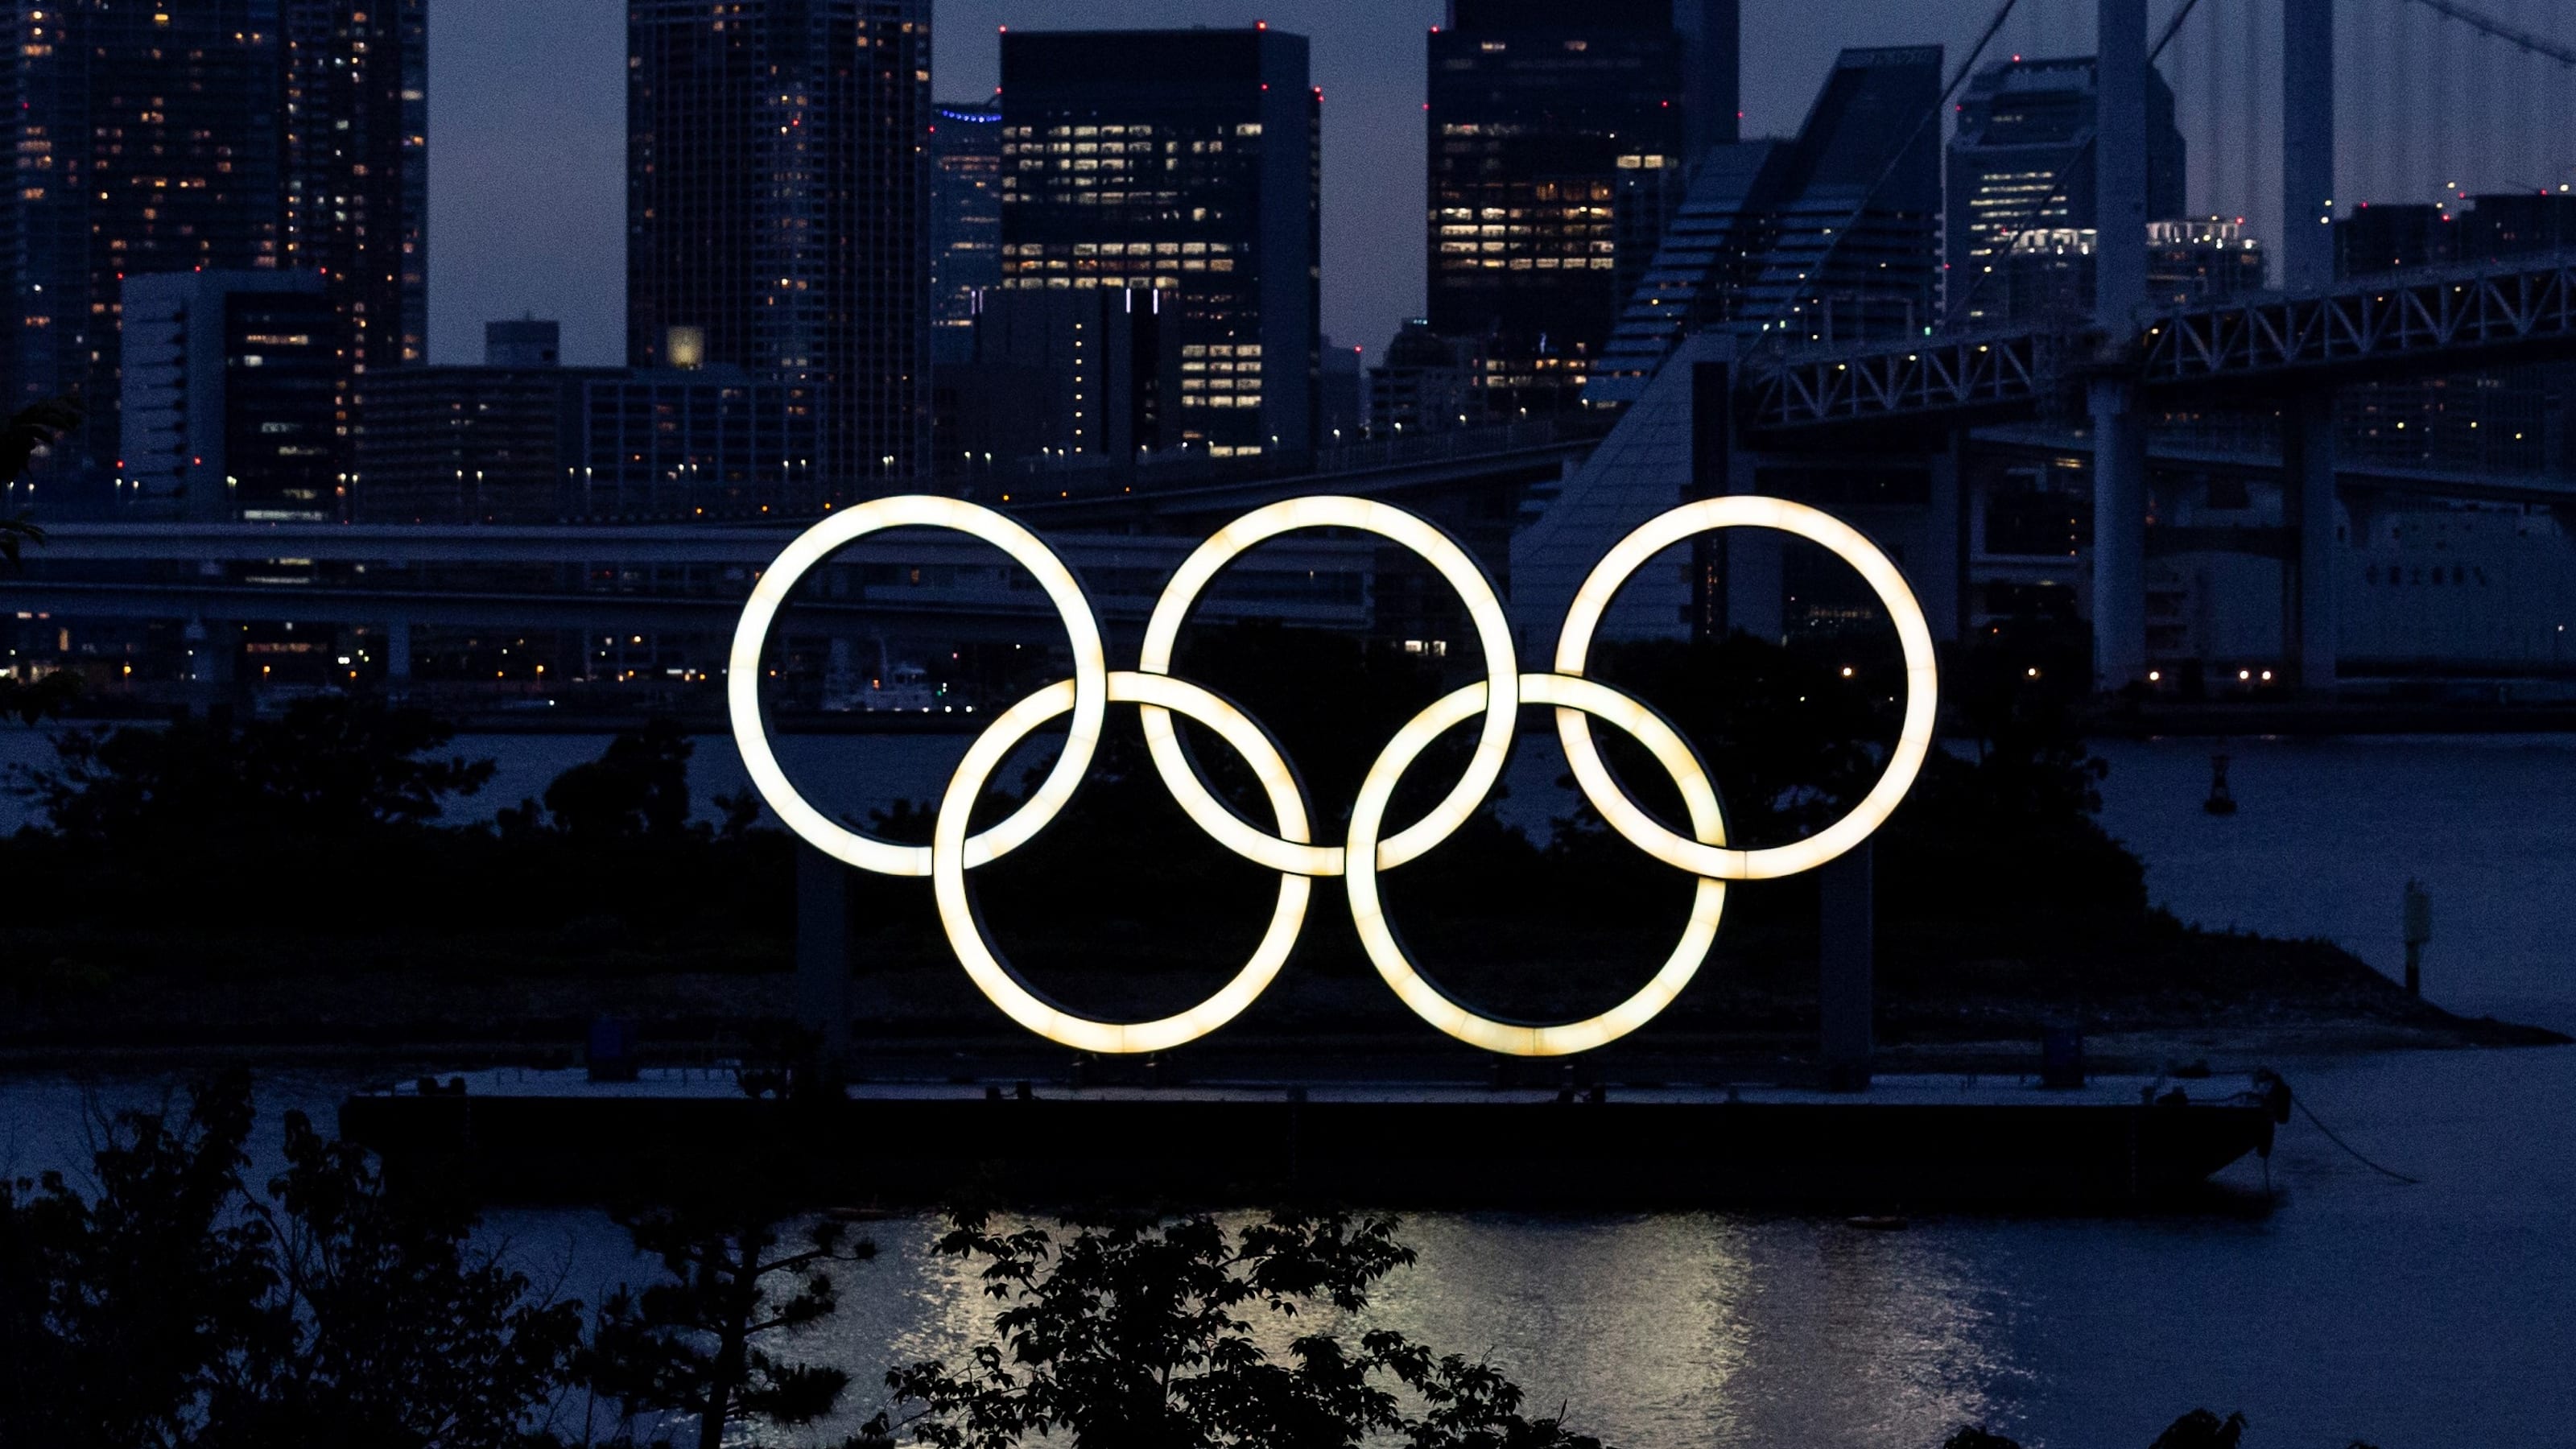 موعد افتتاح اولمبياد طوكيو